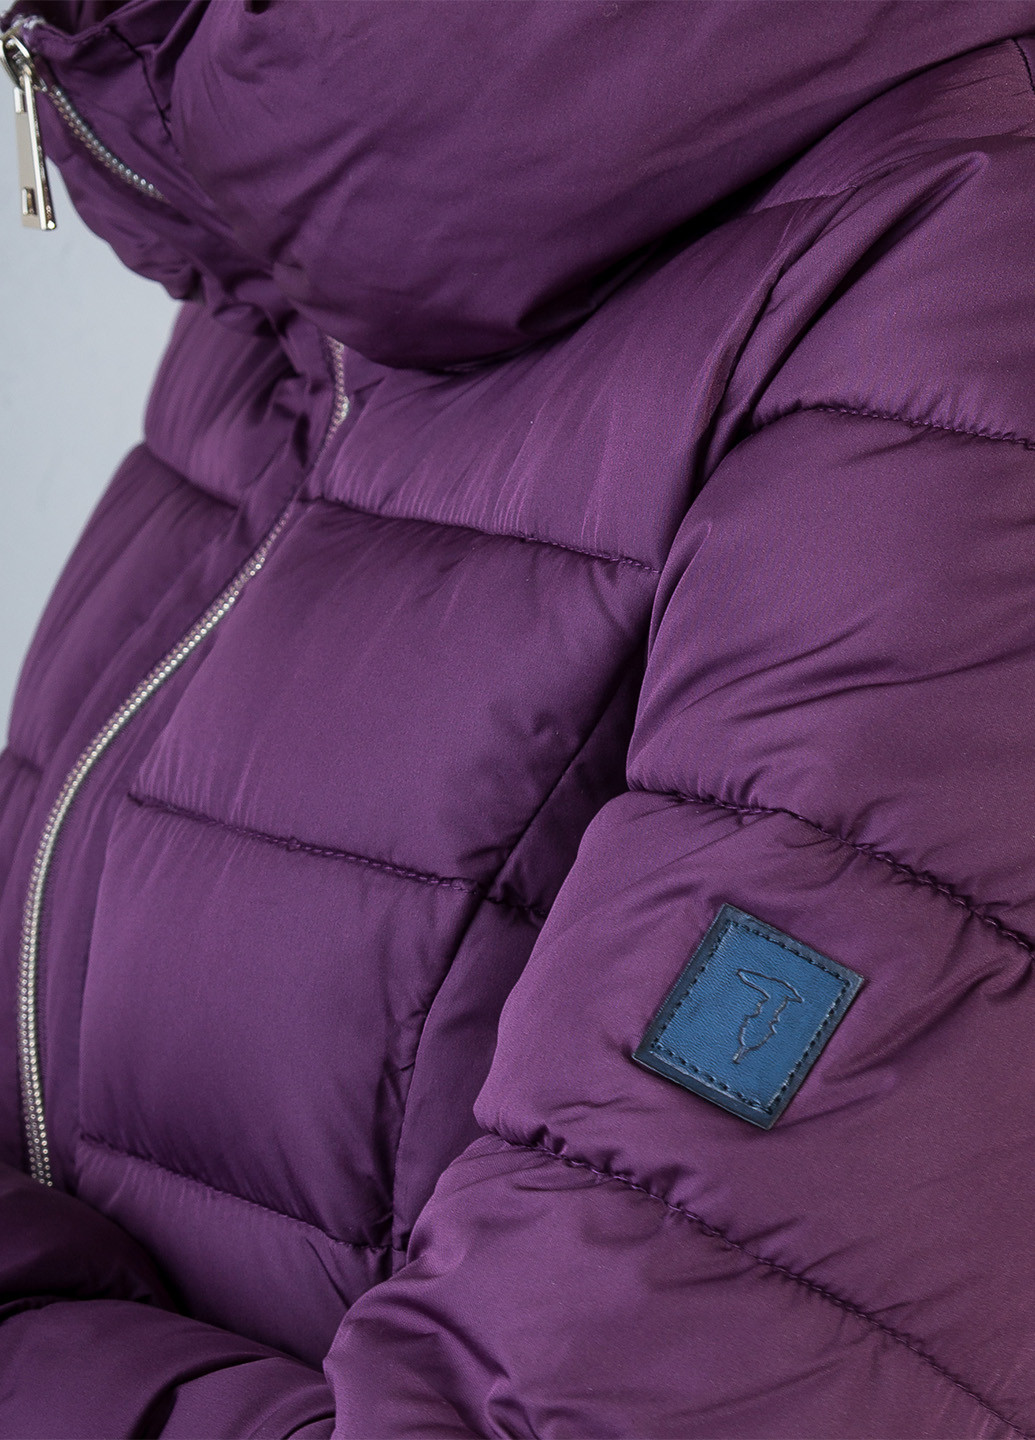 Фіолетова зимня куртка Trussardi